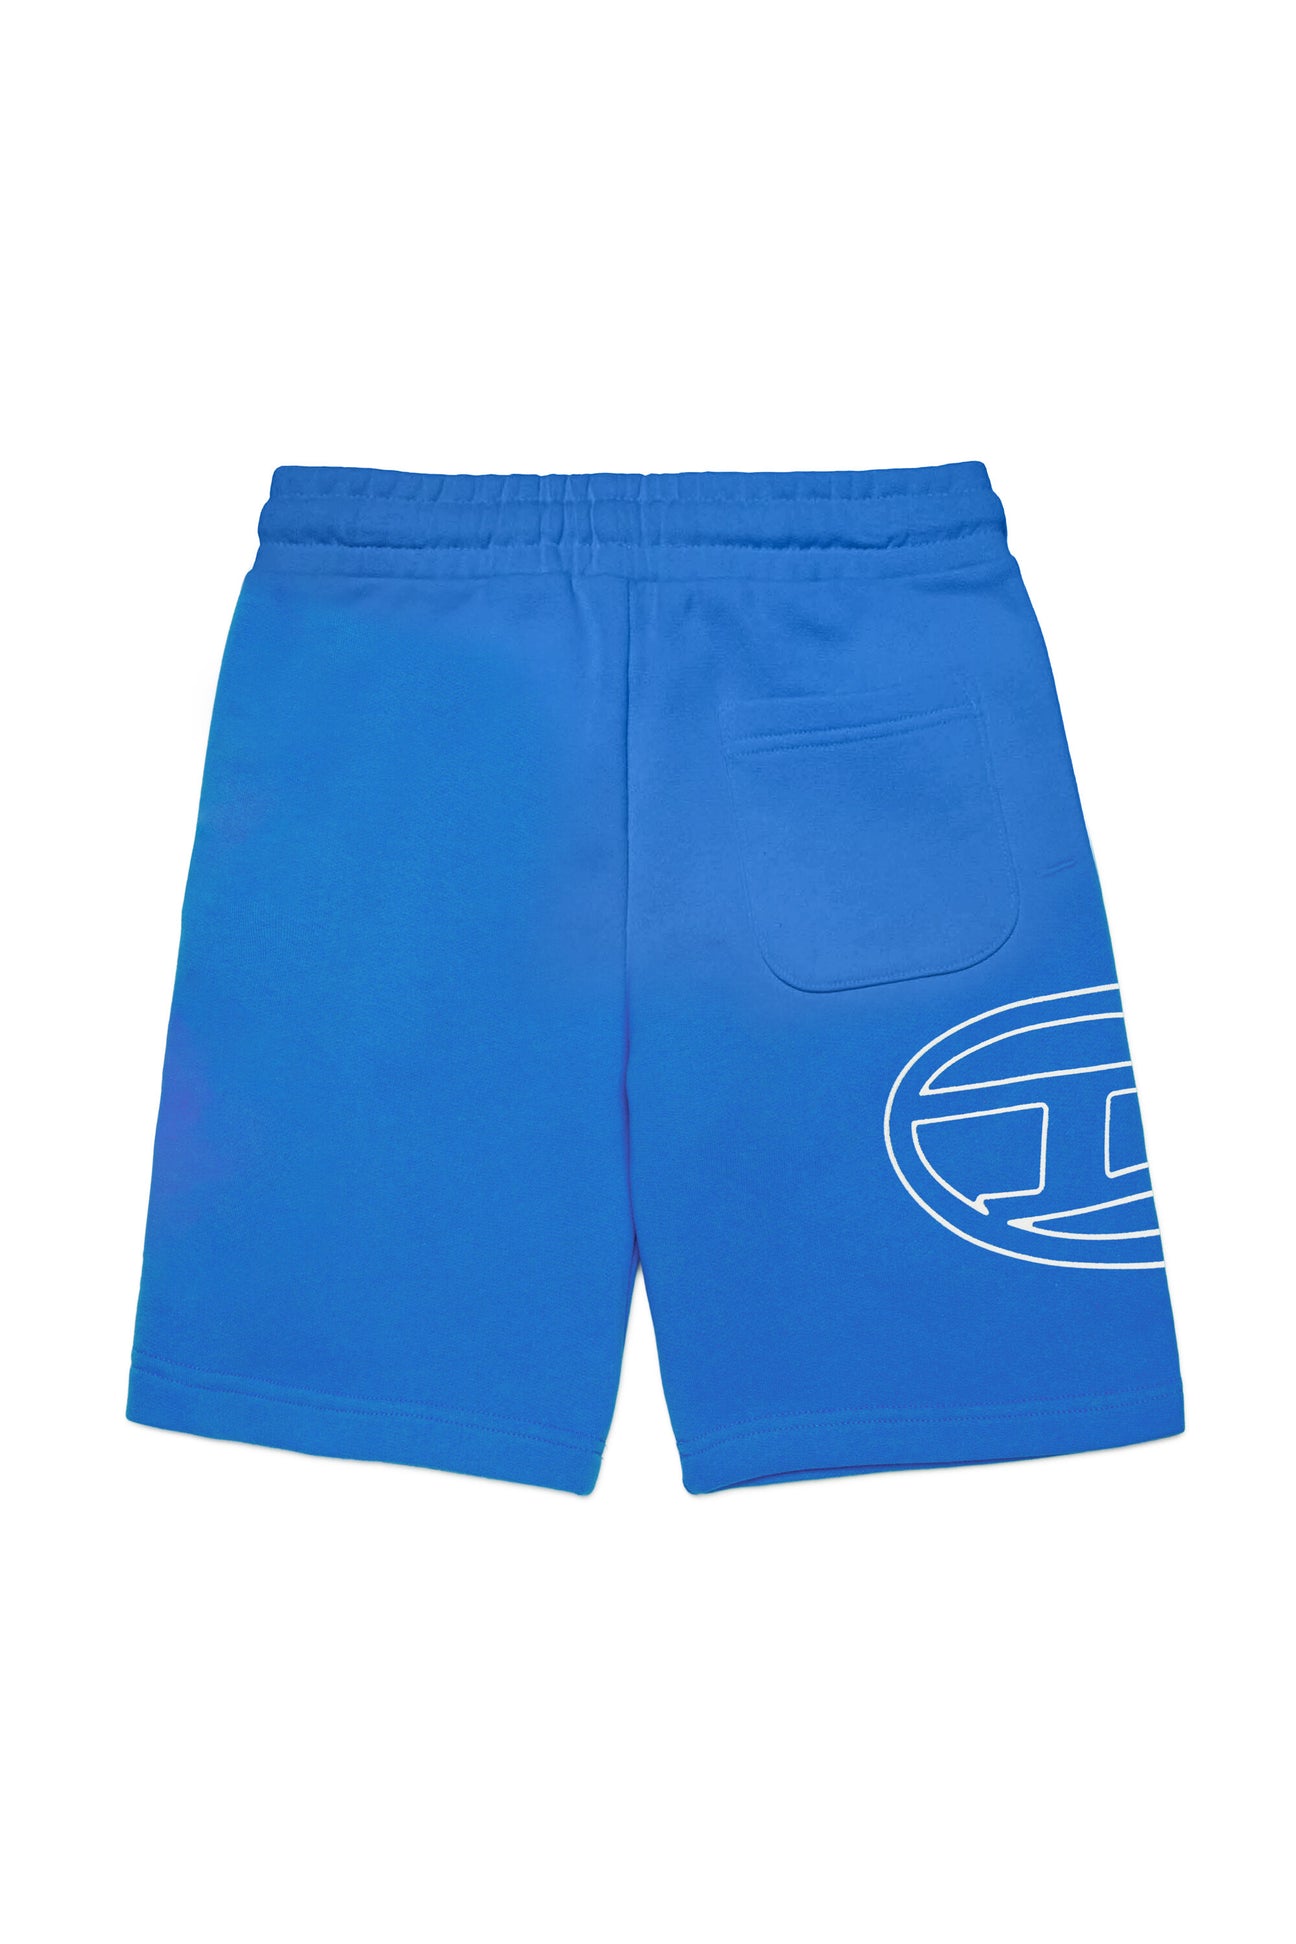 Pantalones cortos en chándal con logotipo Oval D Pantalones cortos en chándal con logotipo Oval D